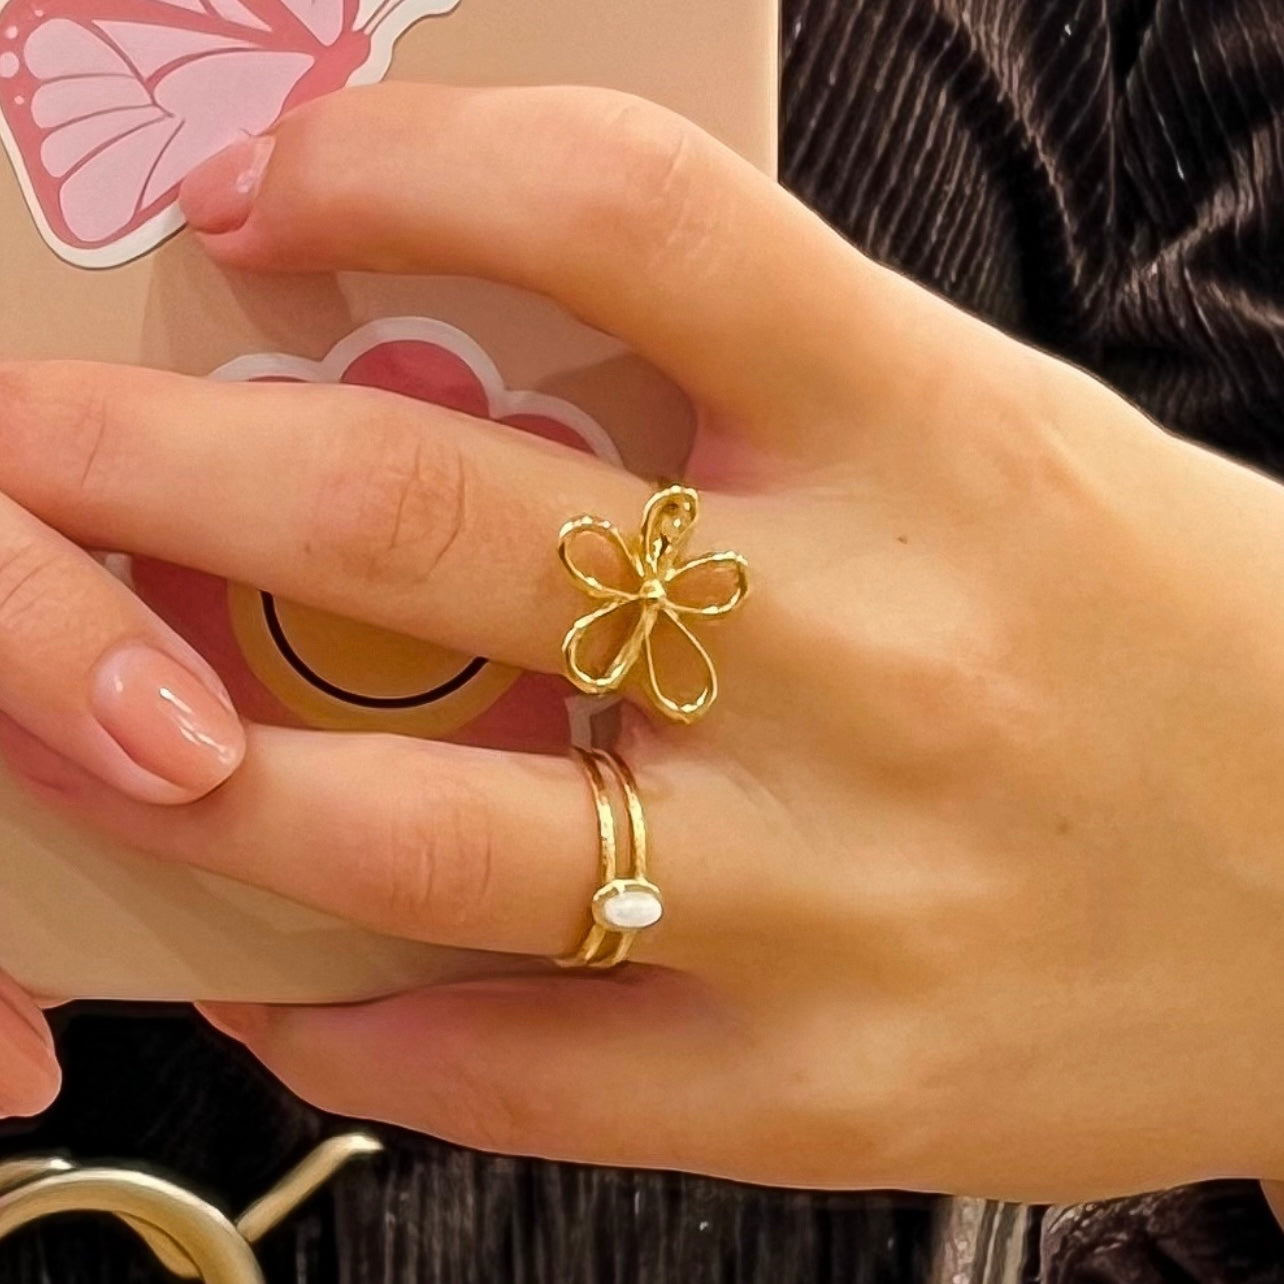 Tiny flower ring